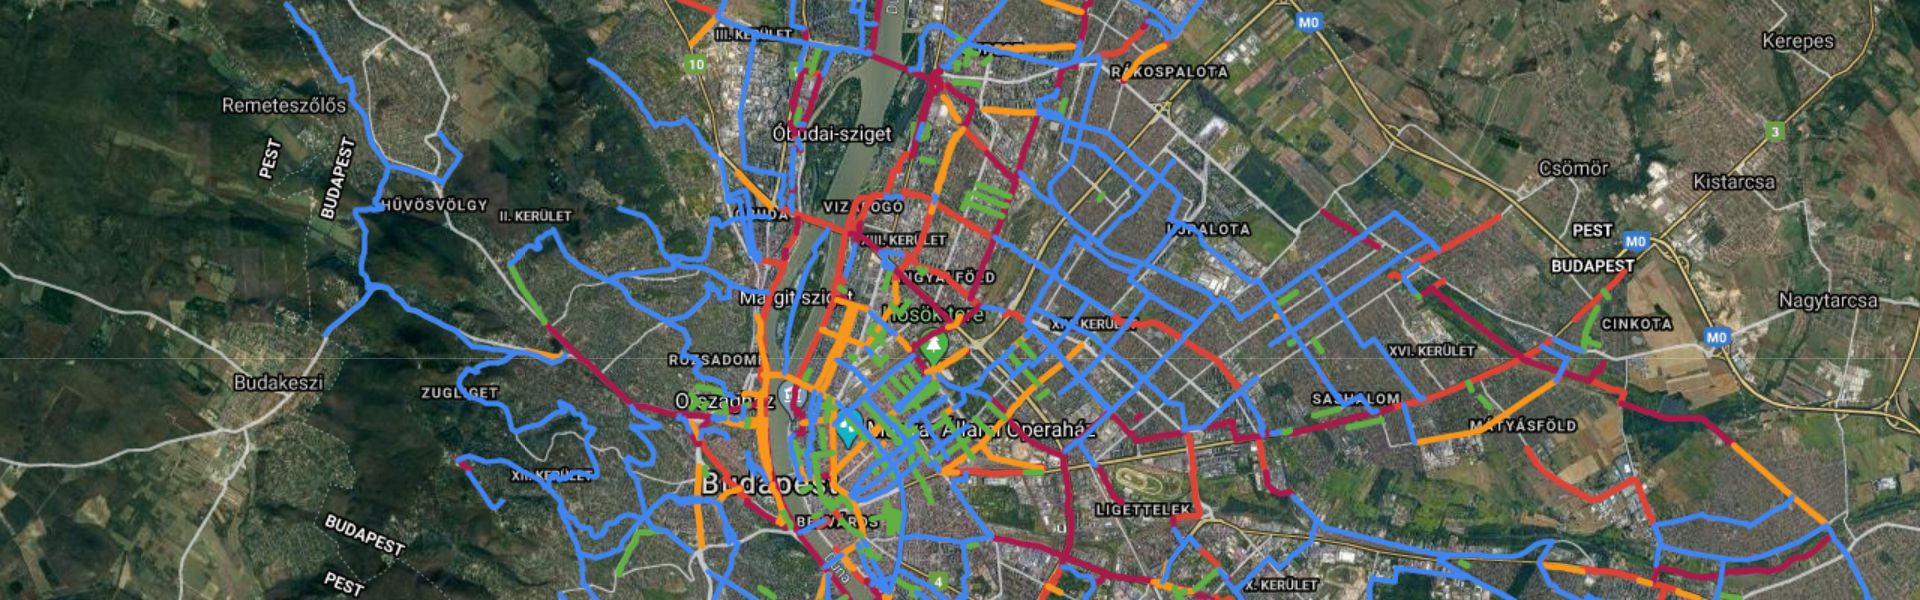 budapesti kerékpárút térkép Budapesti Kerekparut Terkep budapesti kerékpárút térkép